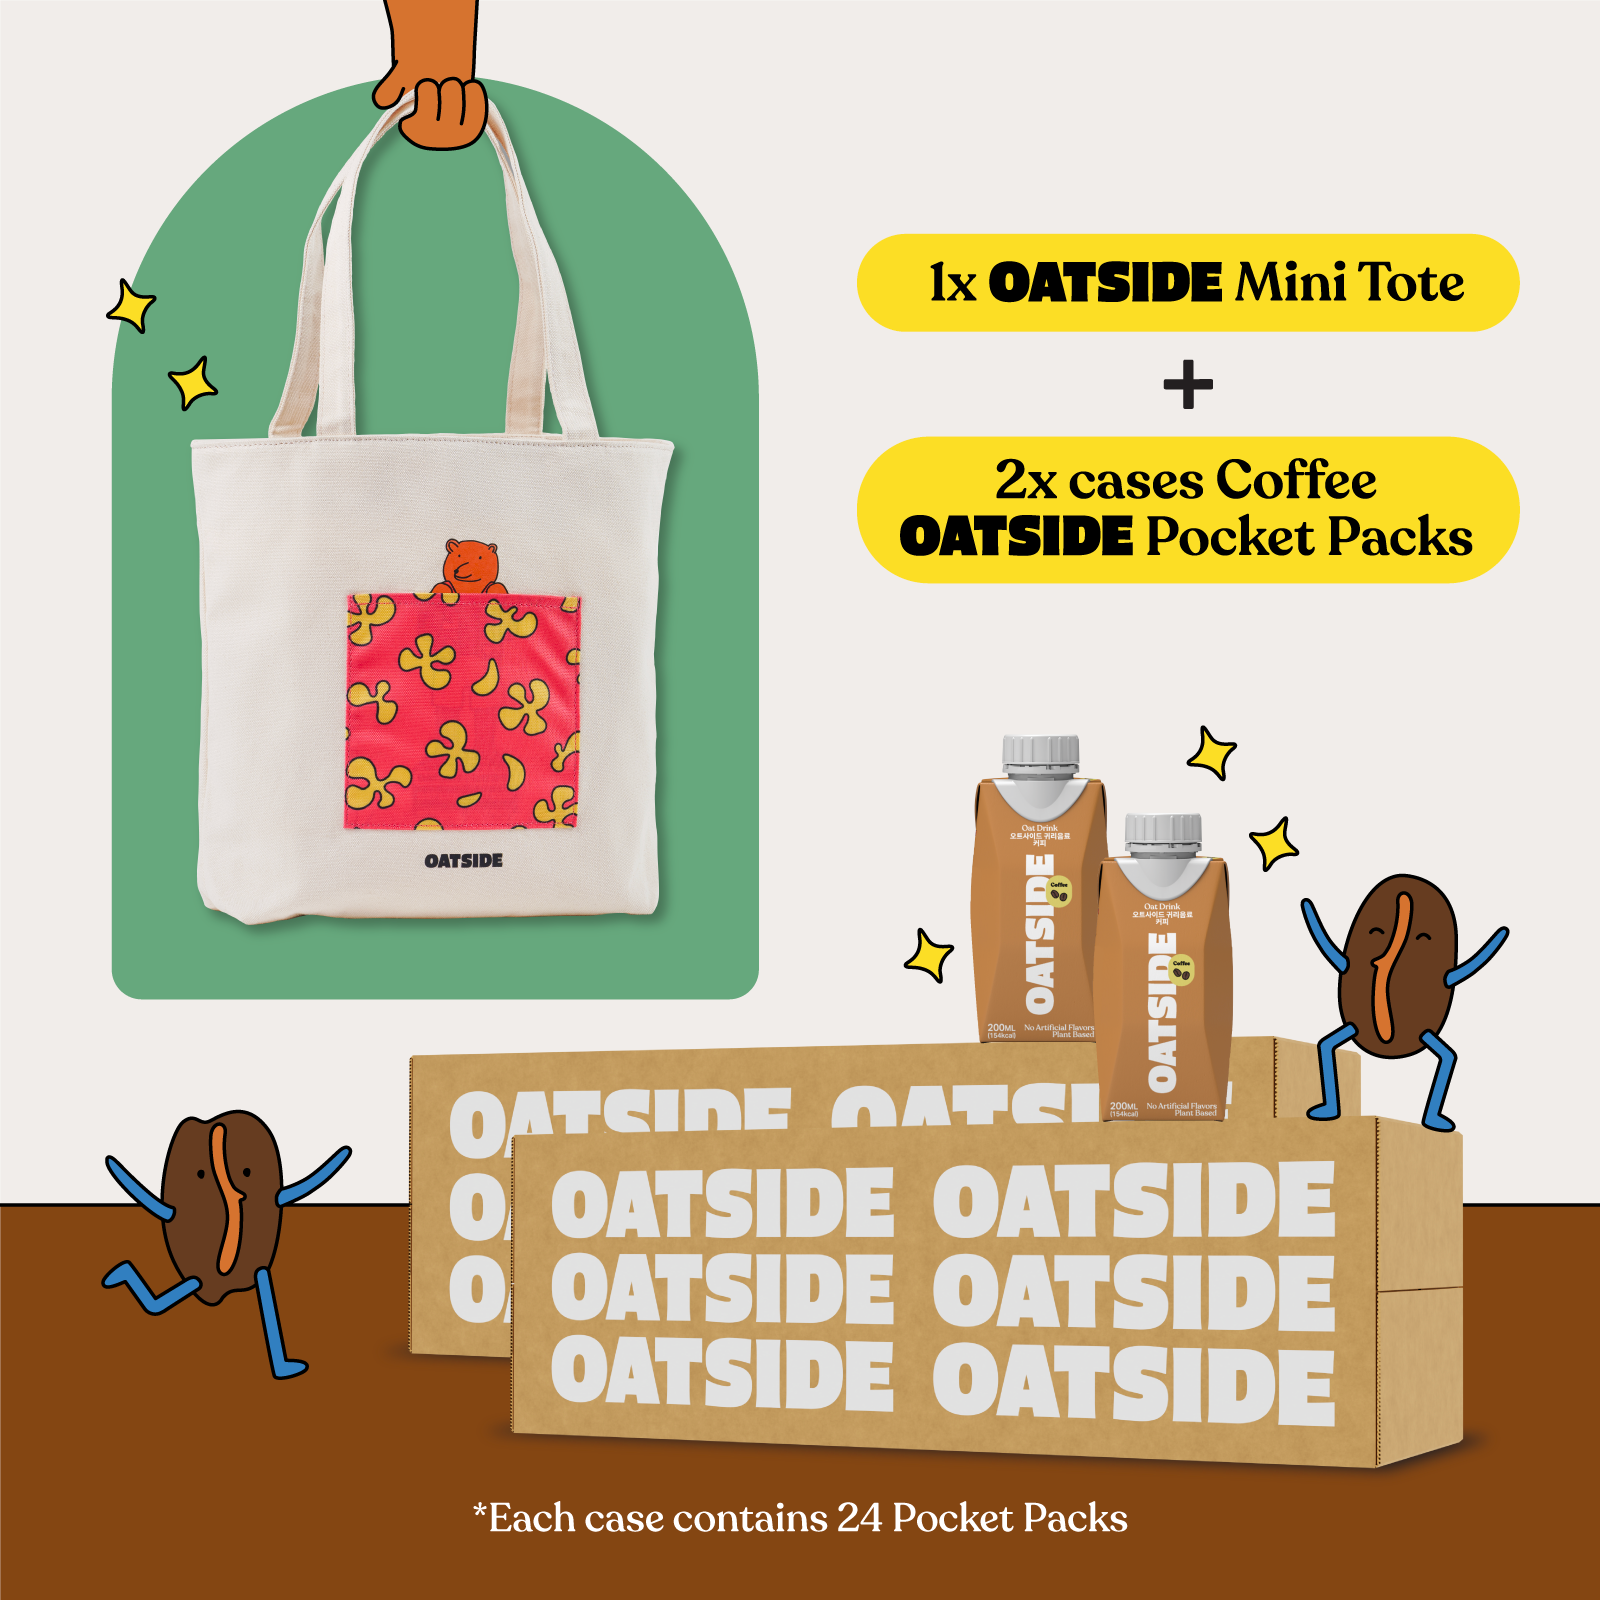 OATISDE Mini Tote Bag & 2 Pocket Pack Carton Bundle